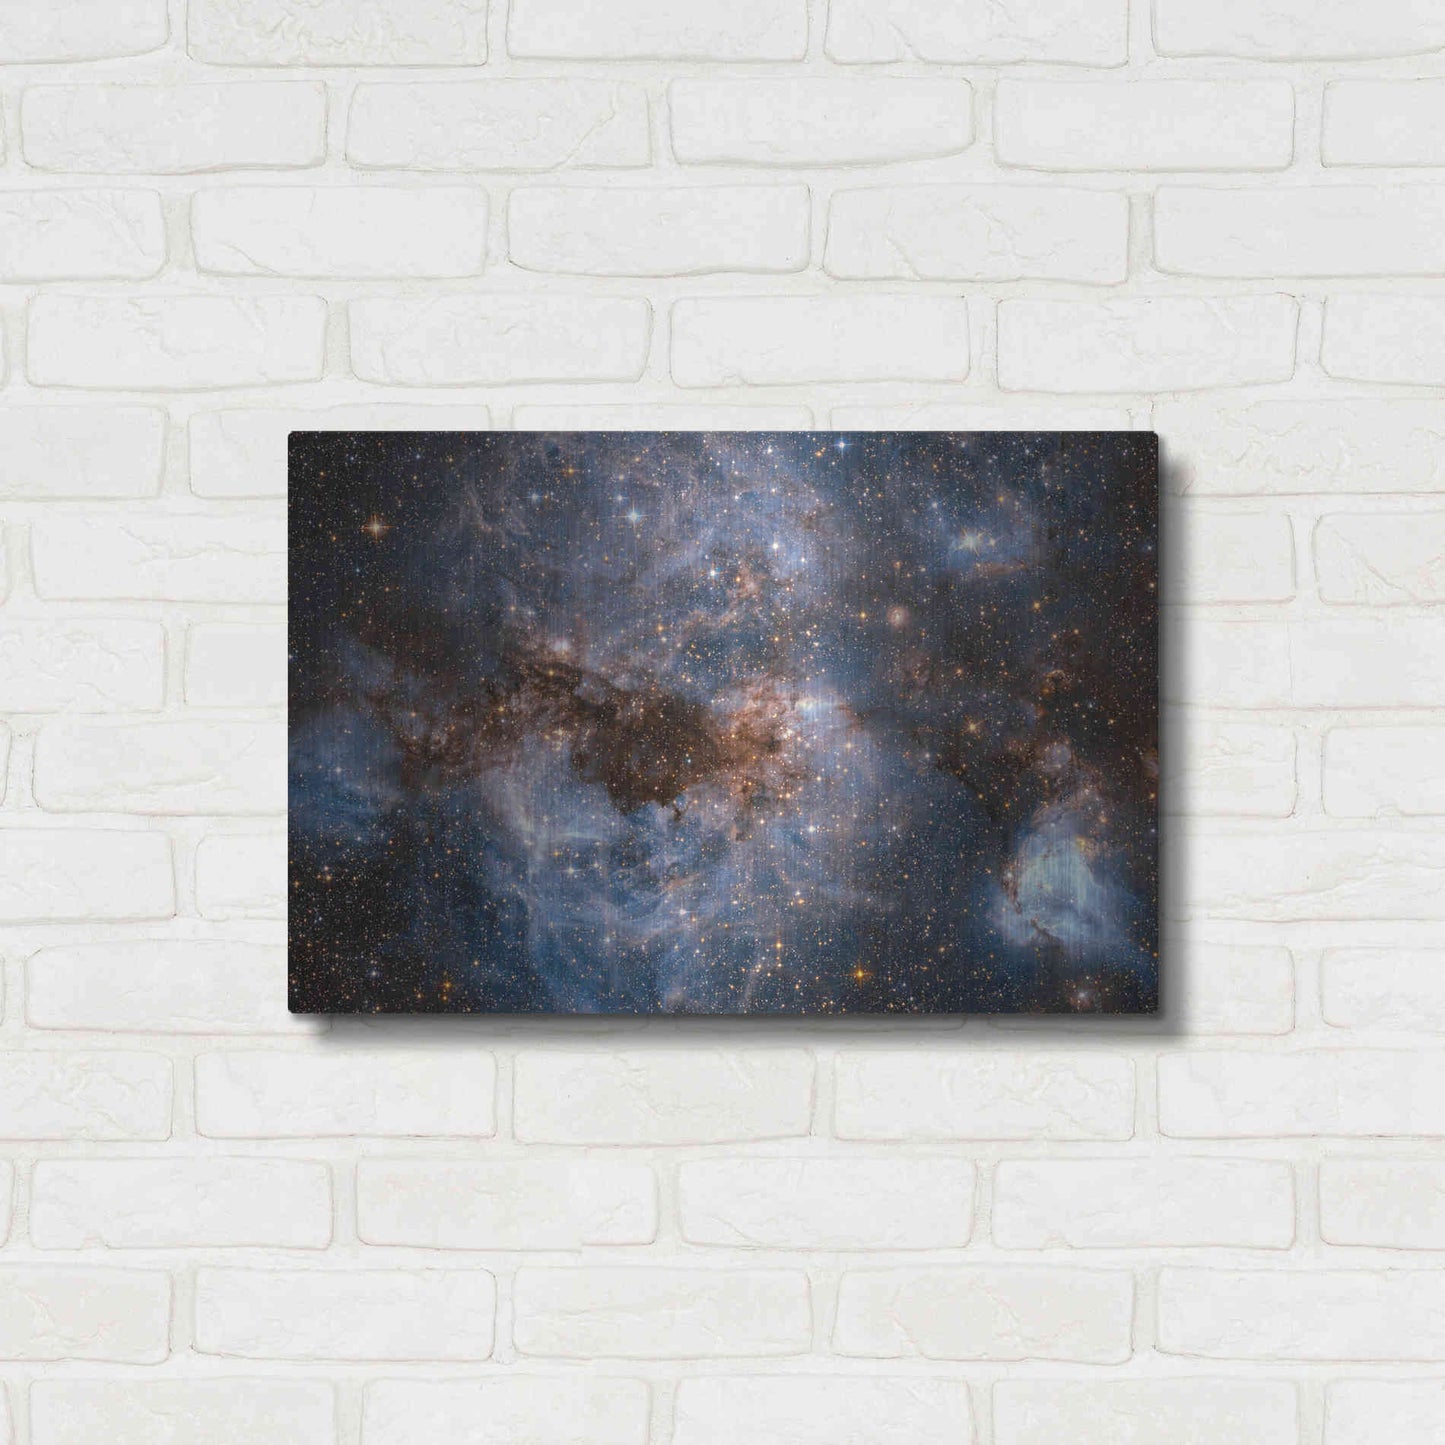 Luxe Metal Art 'Maelstrom Cloud' Hubble Space Telescope, Metal Wall Art,24x16